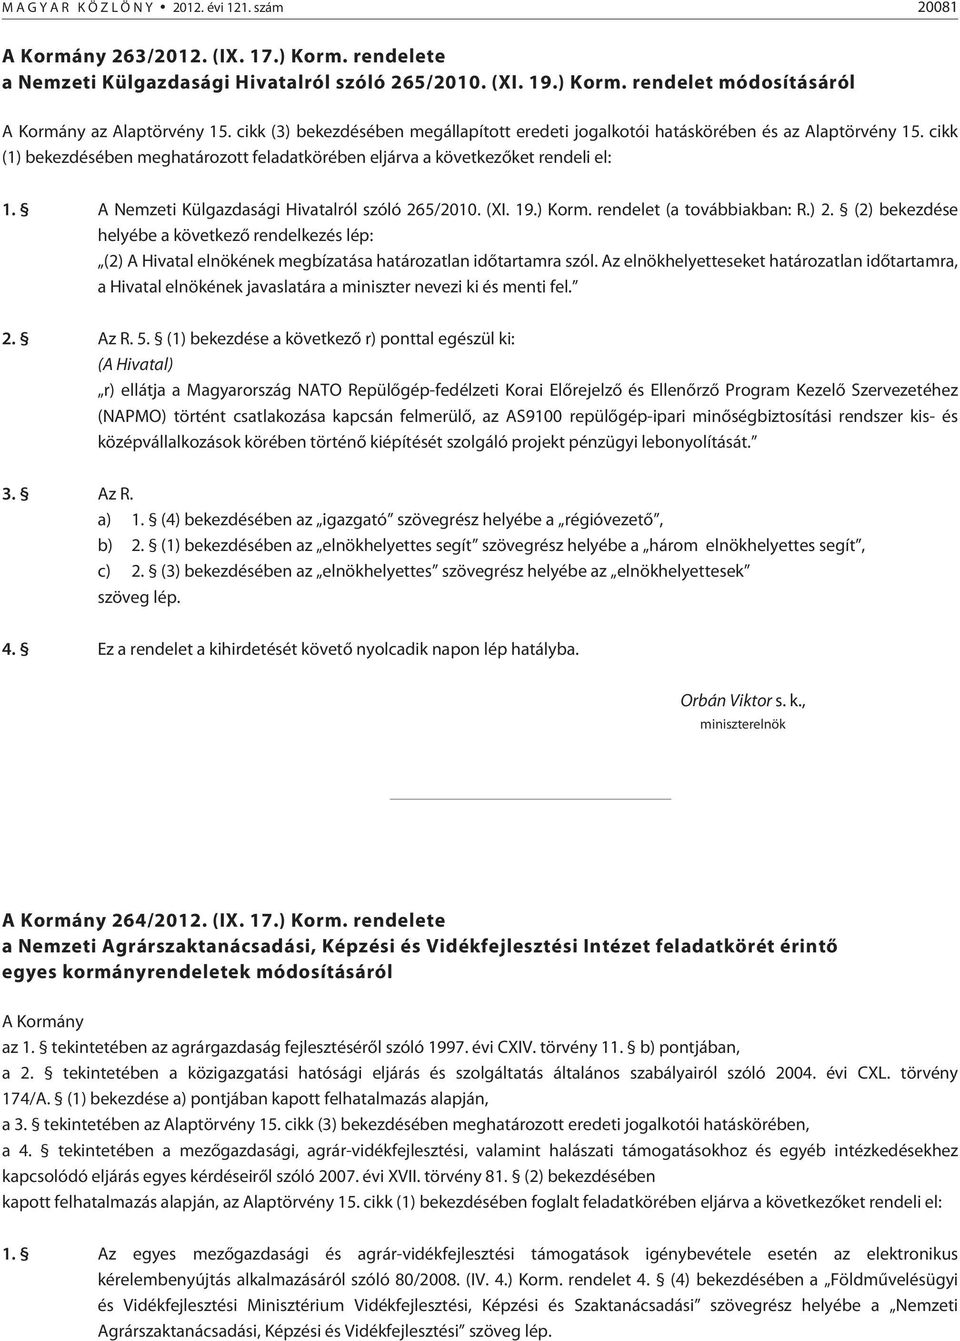 A Nemzeti Külgazdasági Hivatalról szóló 265/2010. (XI. 19.) Korm. rendelet (a továbbiakban: R.) 2.